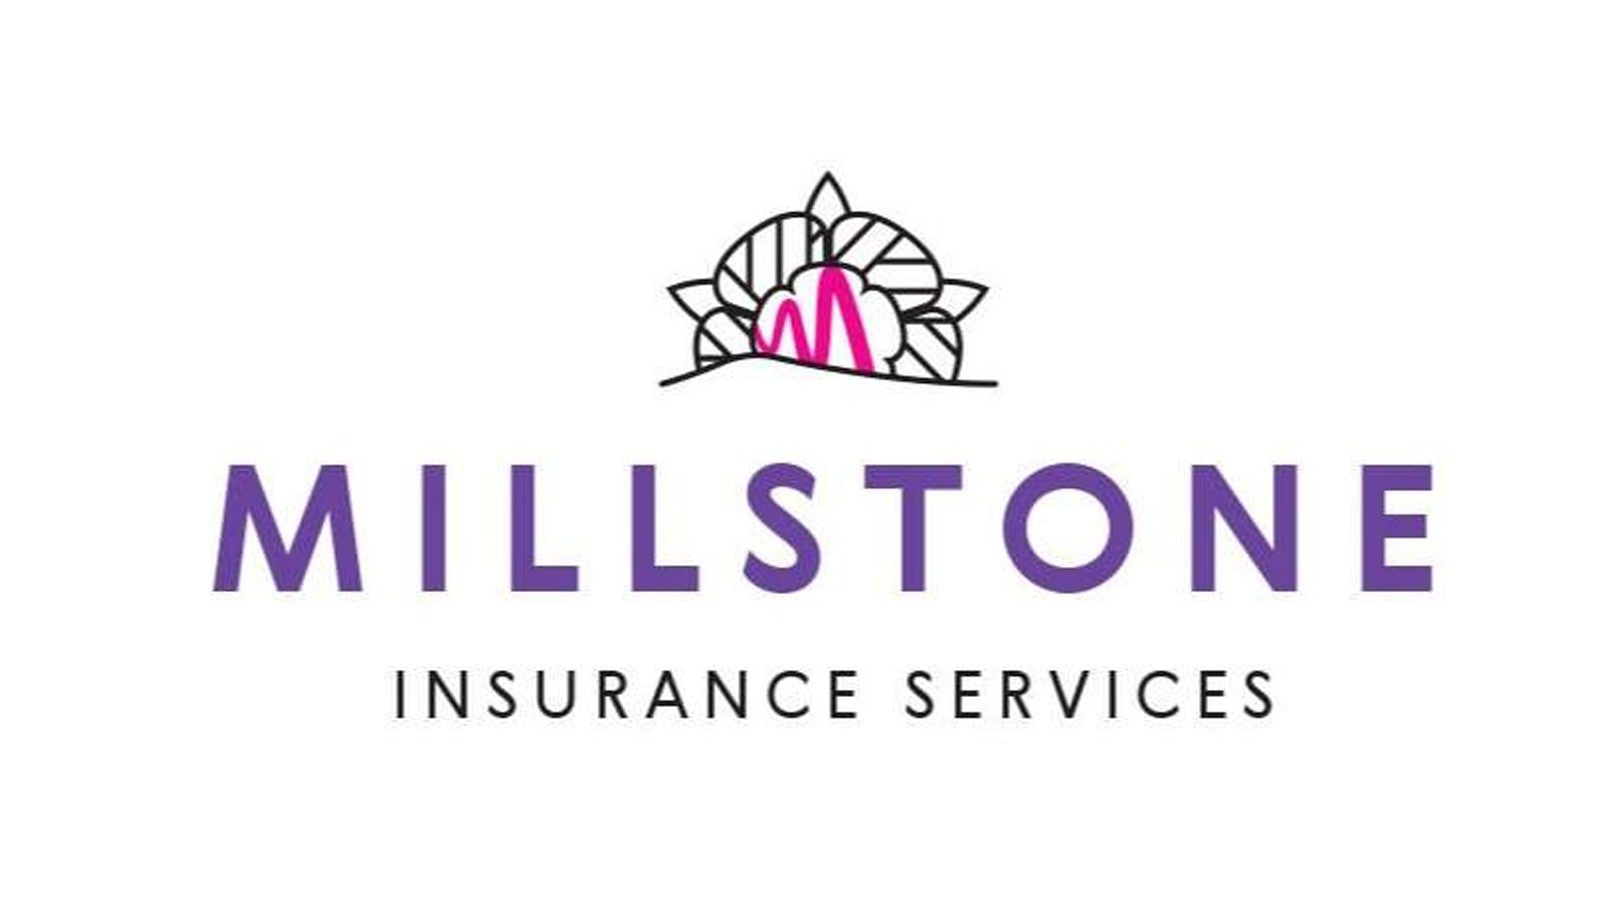 Millstone Insurance